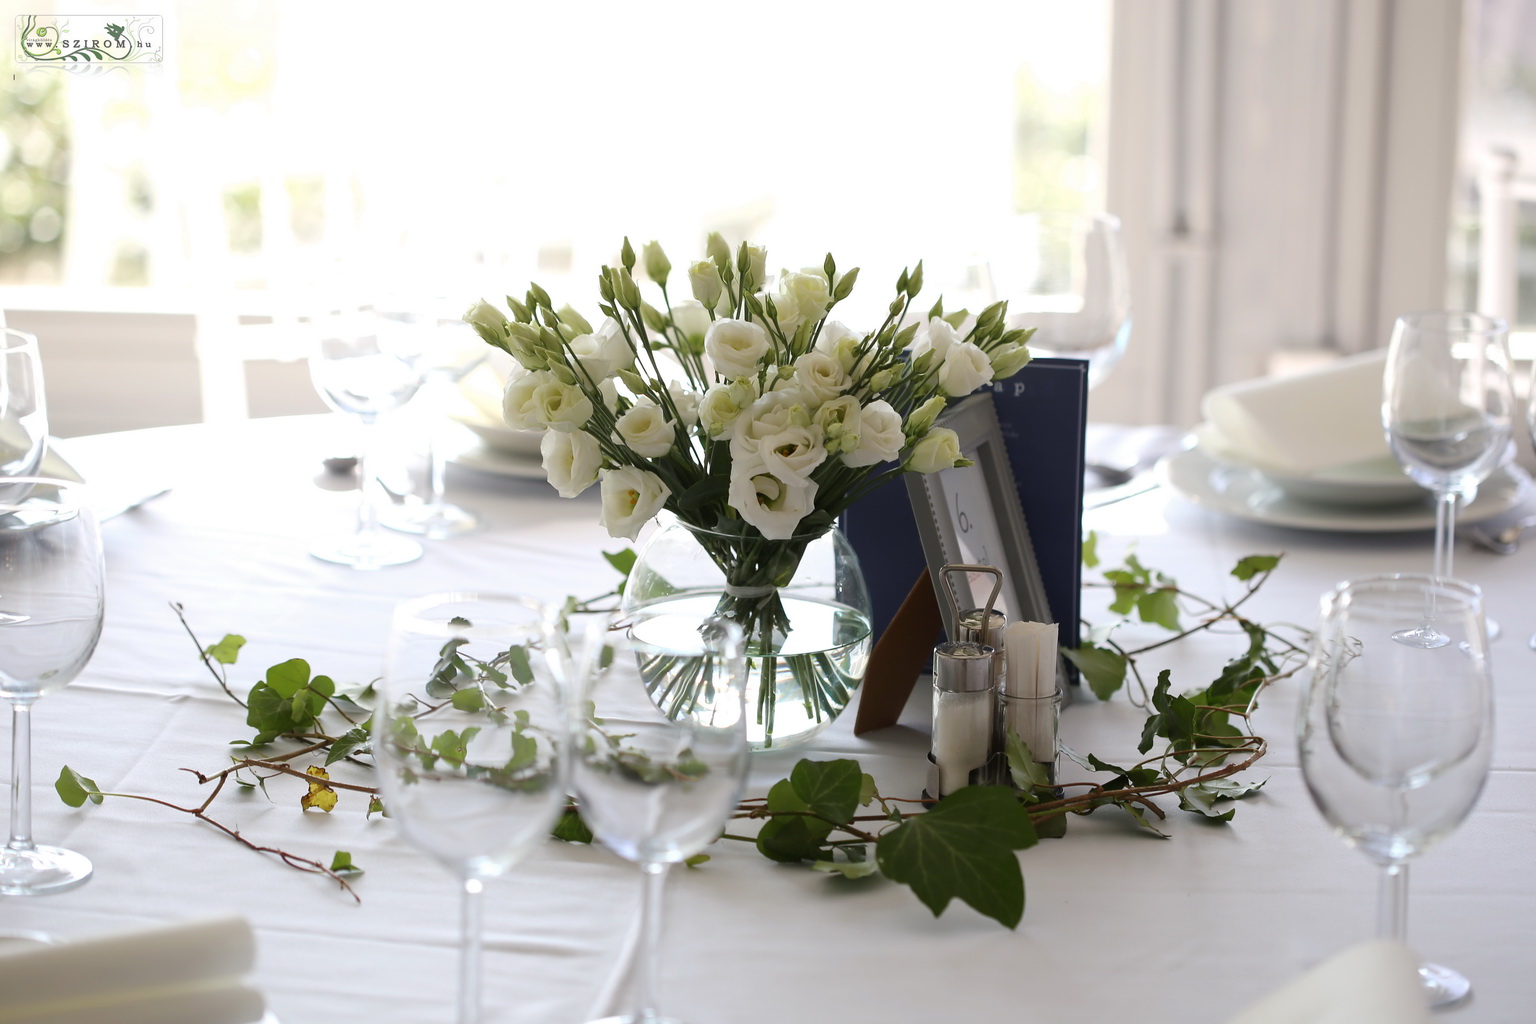 Esküvői asztaldísz üveggömbben Csillagkert (liziantusz, borostyán, fehér)